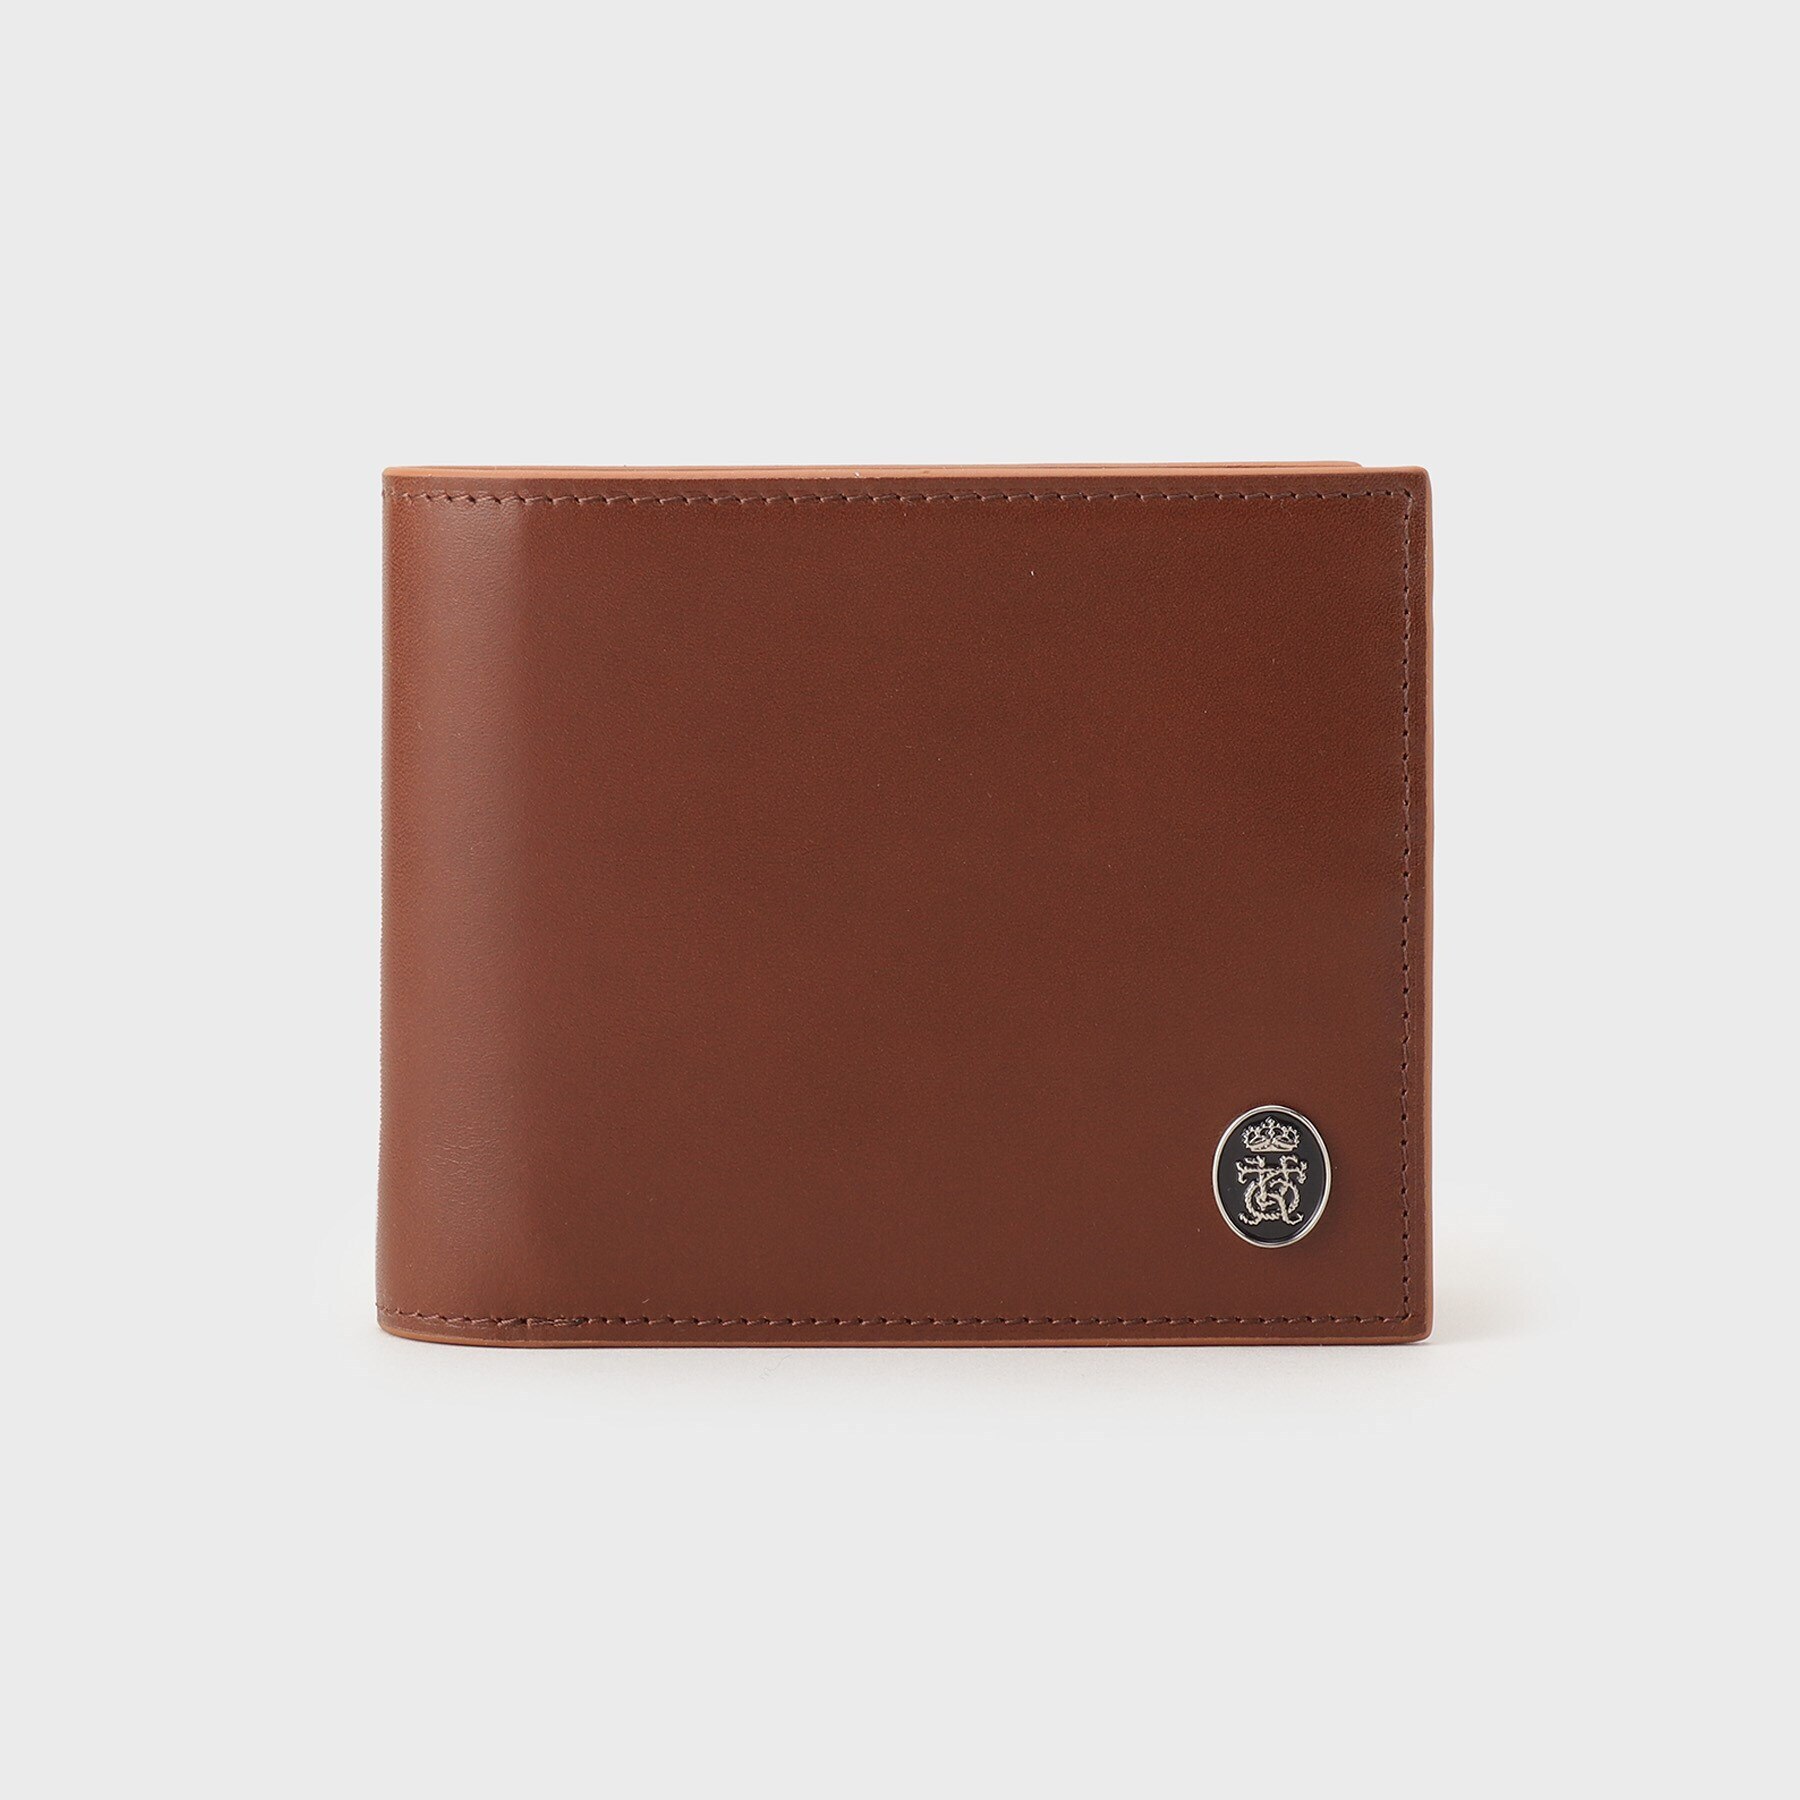 オーバーキップ 2つ折り財布|TAKEO KIKUCHI(タケオキクチ)の通販